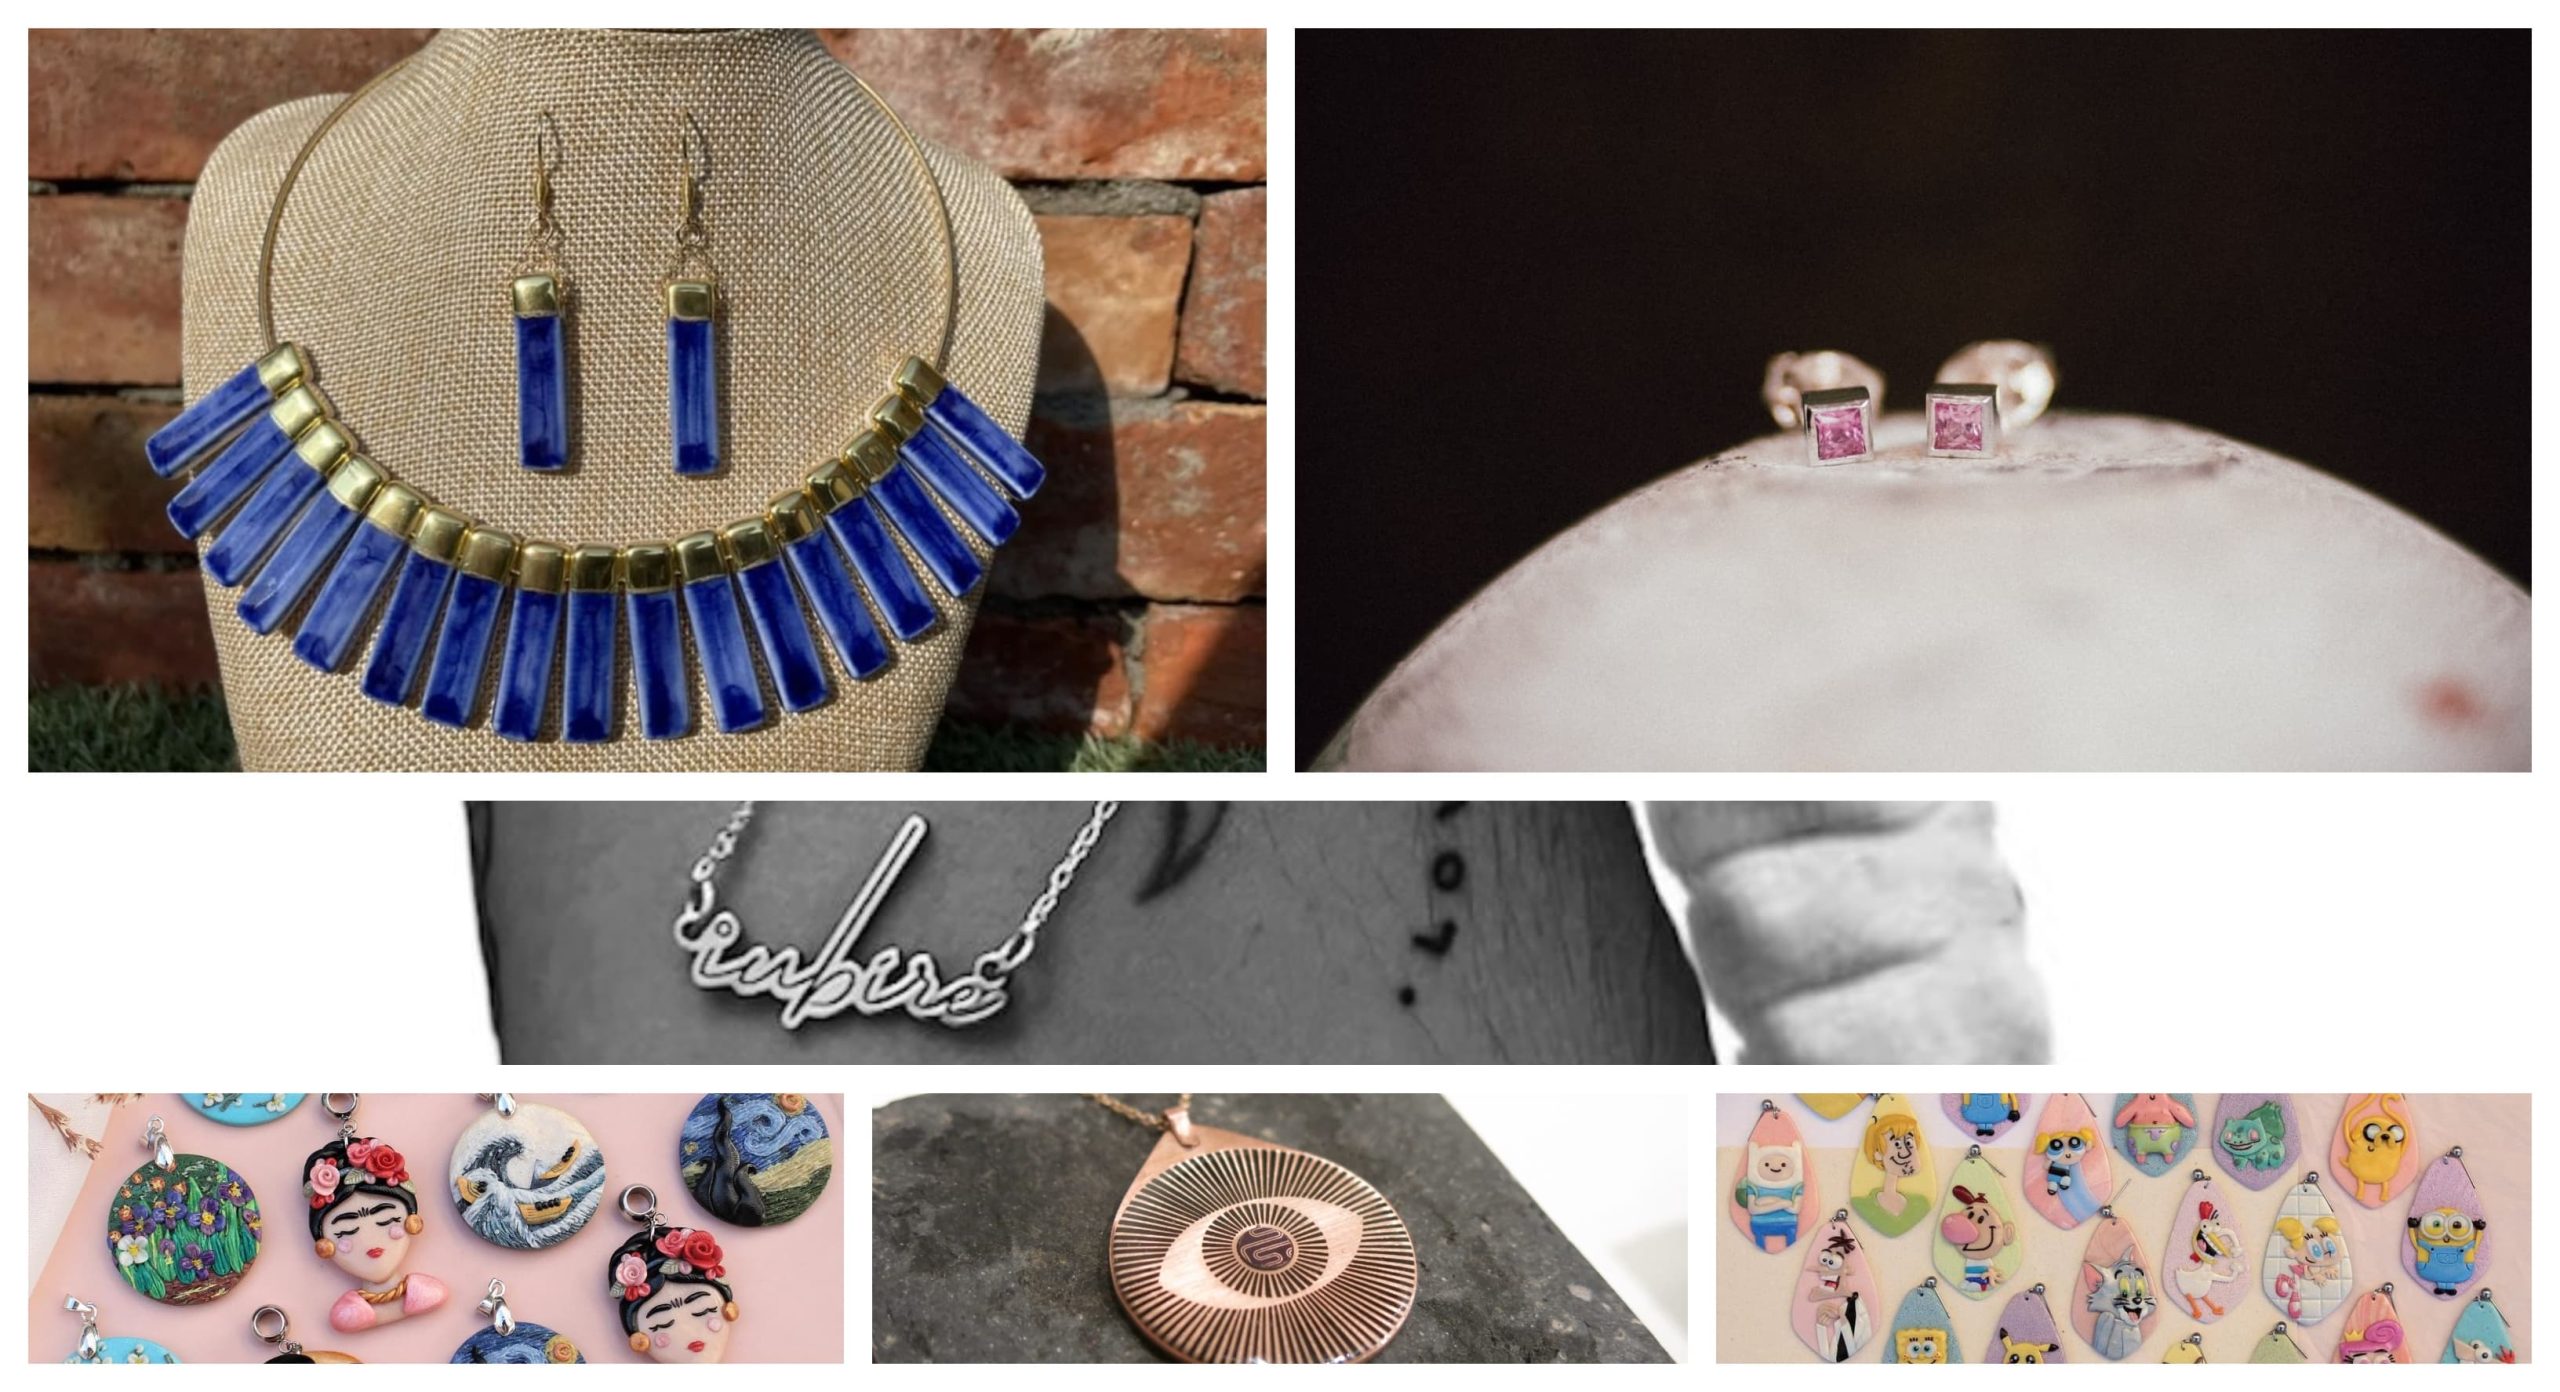 Producători locali de accesorii și bijuterii #madeinCluj